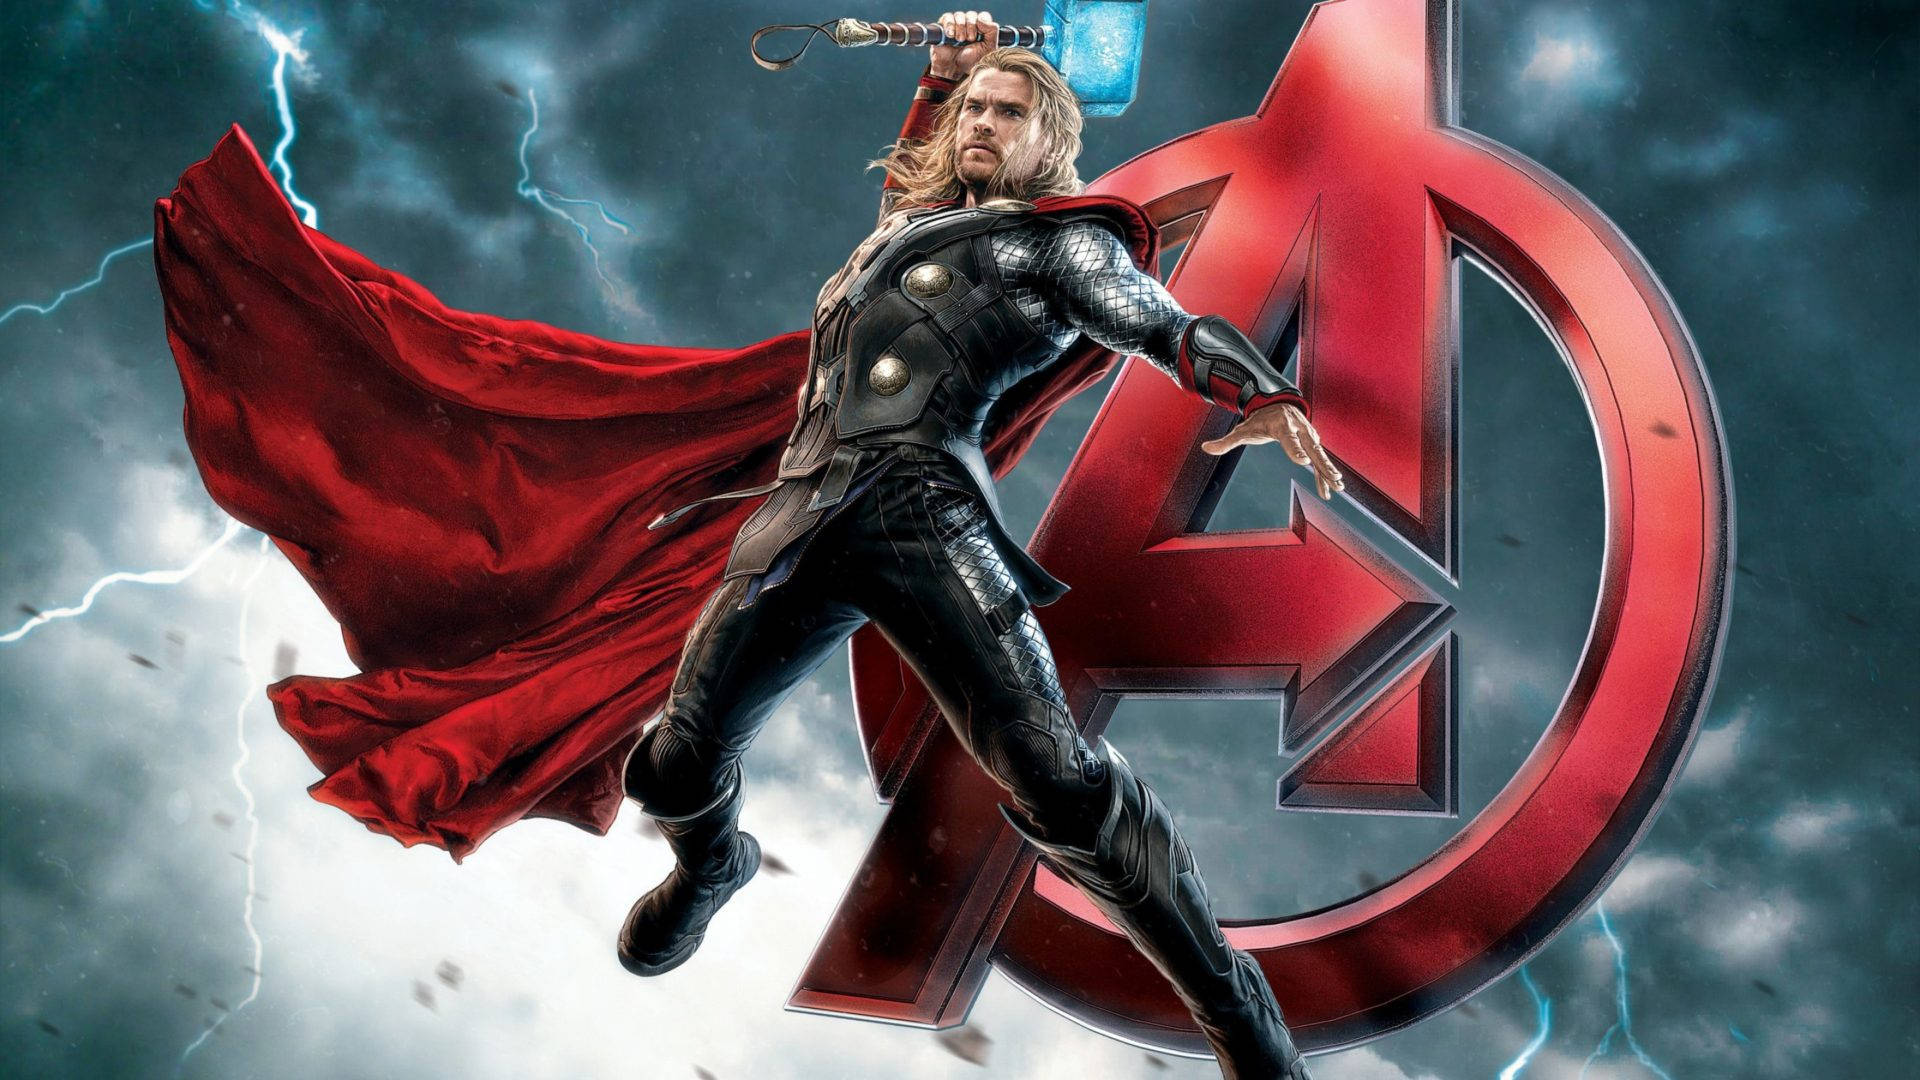 Thor Superhero Member Of Avengers Wallpaper